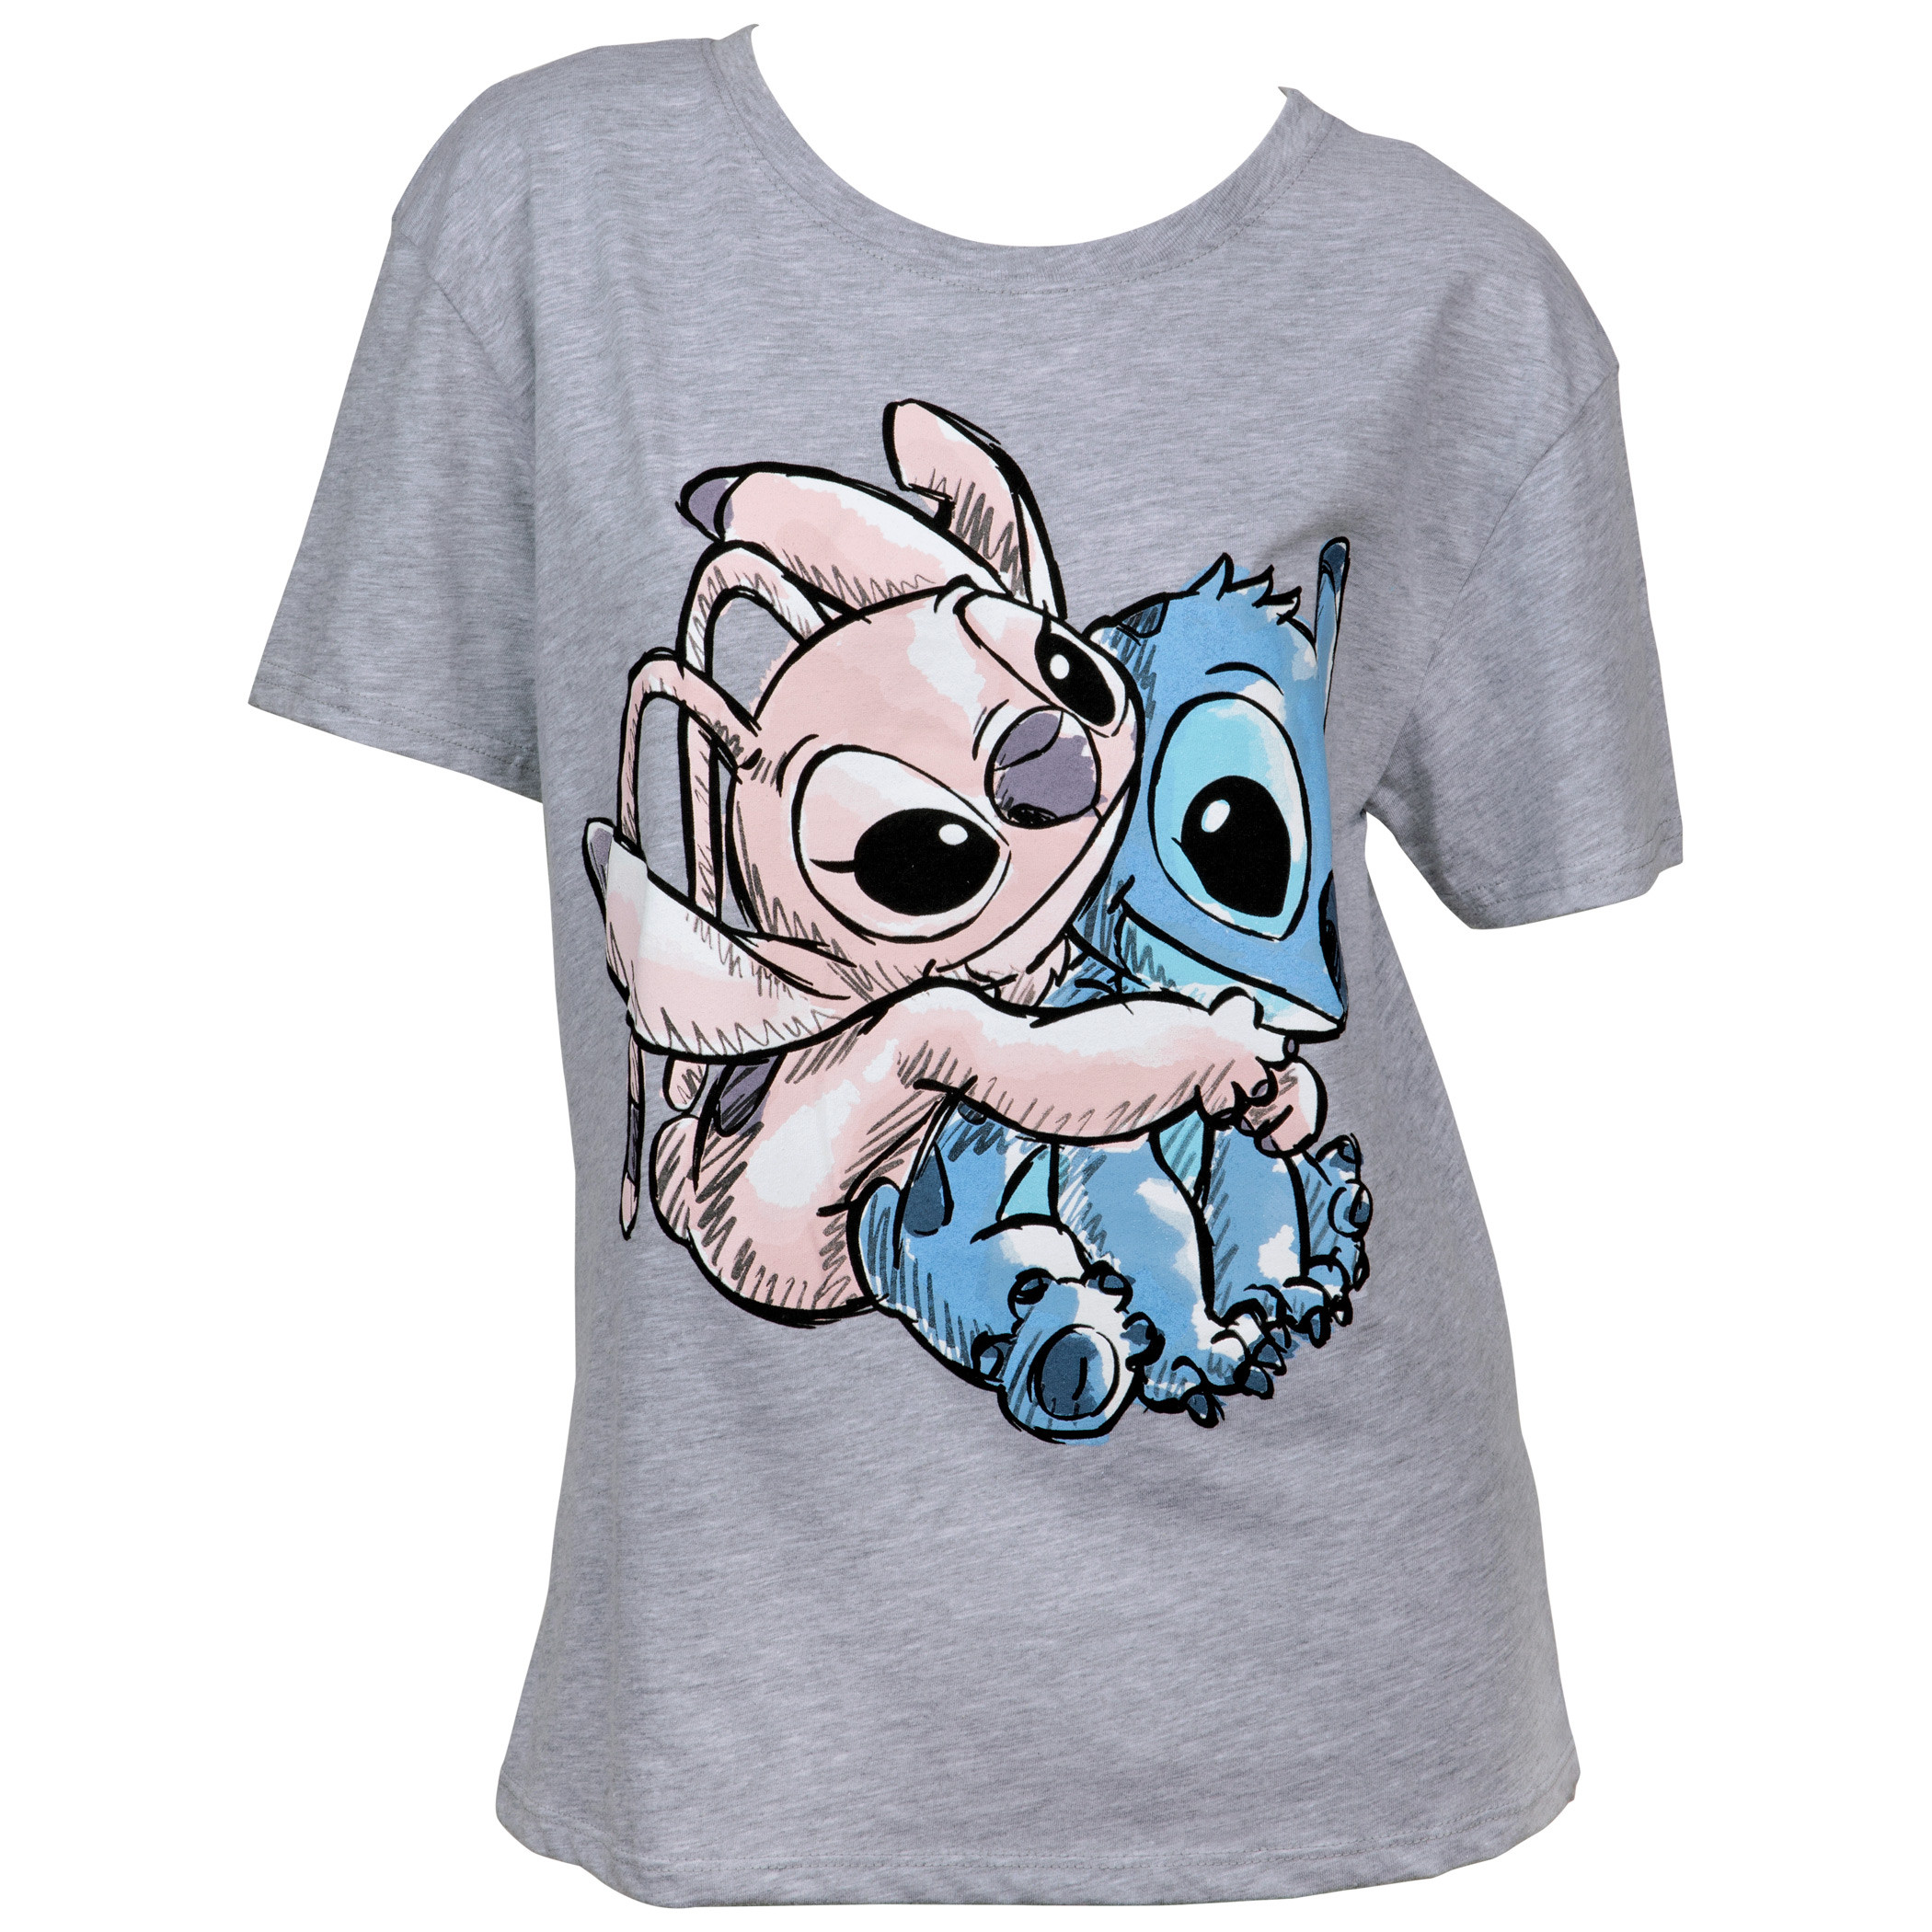 Vêtements et accessoires Disney Lilo & Stitch